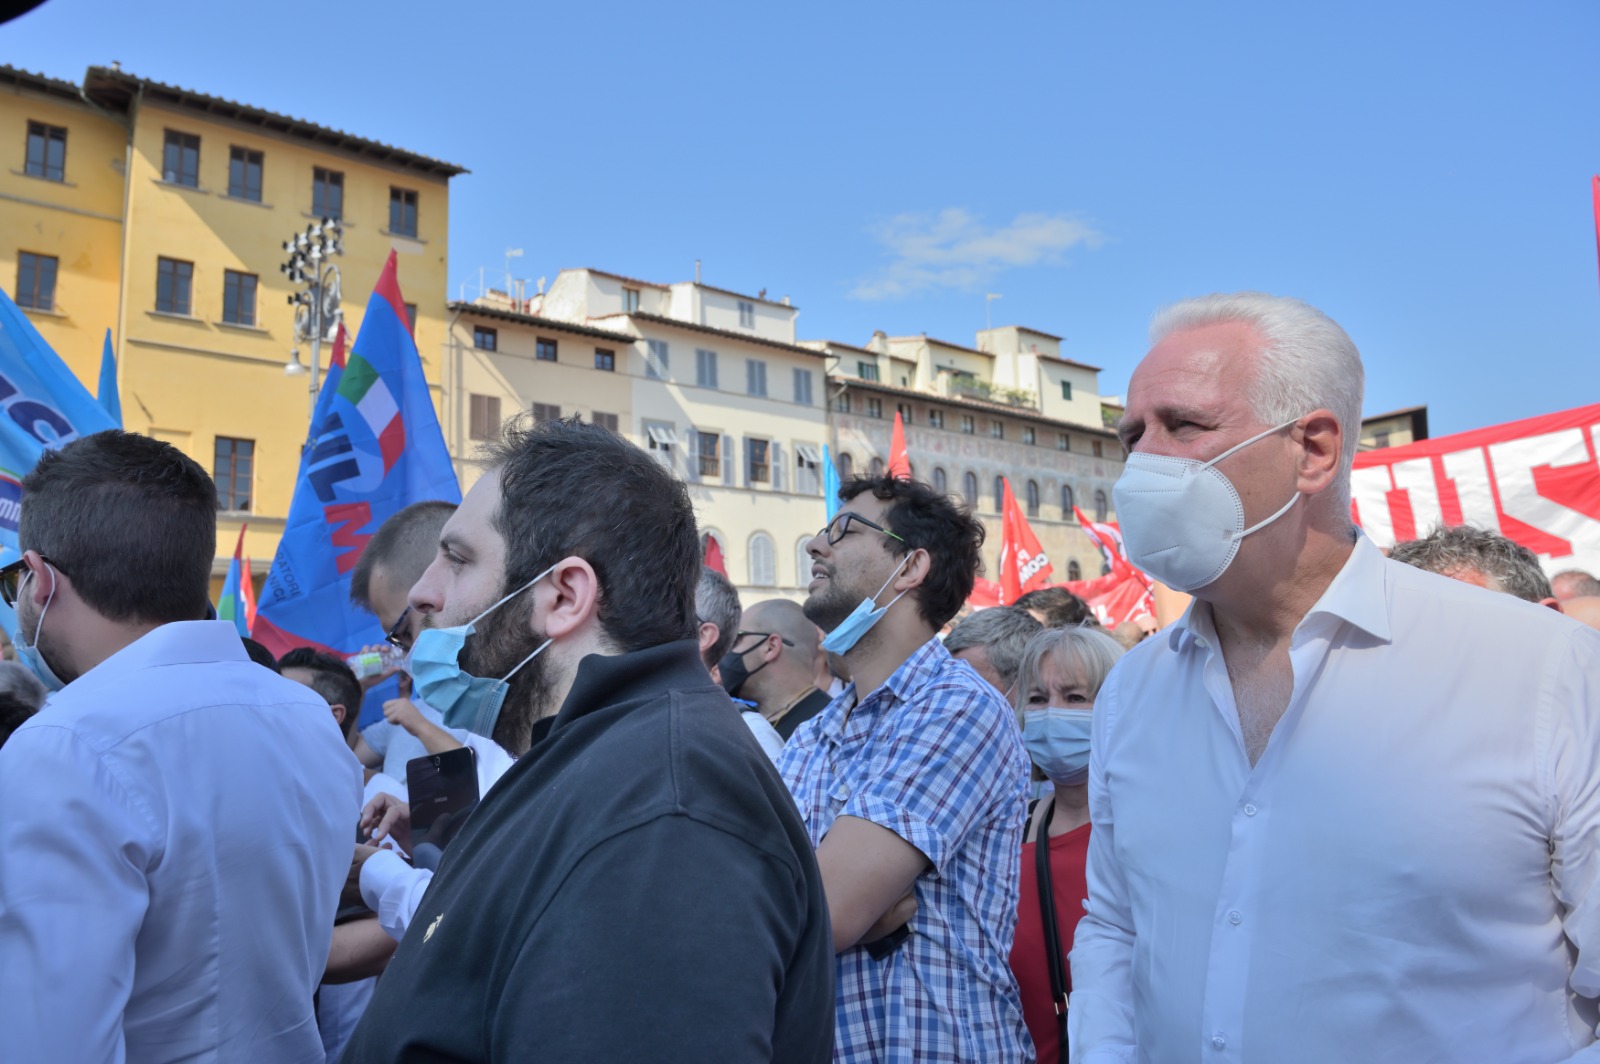 Immagine Gkn, Giani in piazza: “La Toscana si ribella a una chiusura inaccettabile”